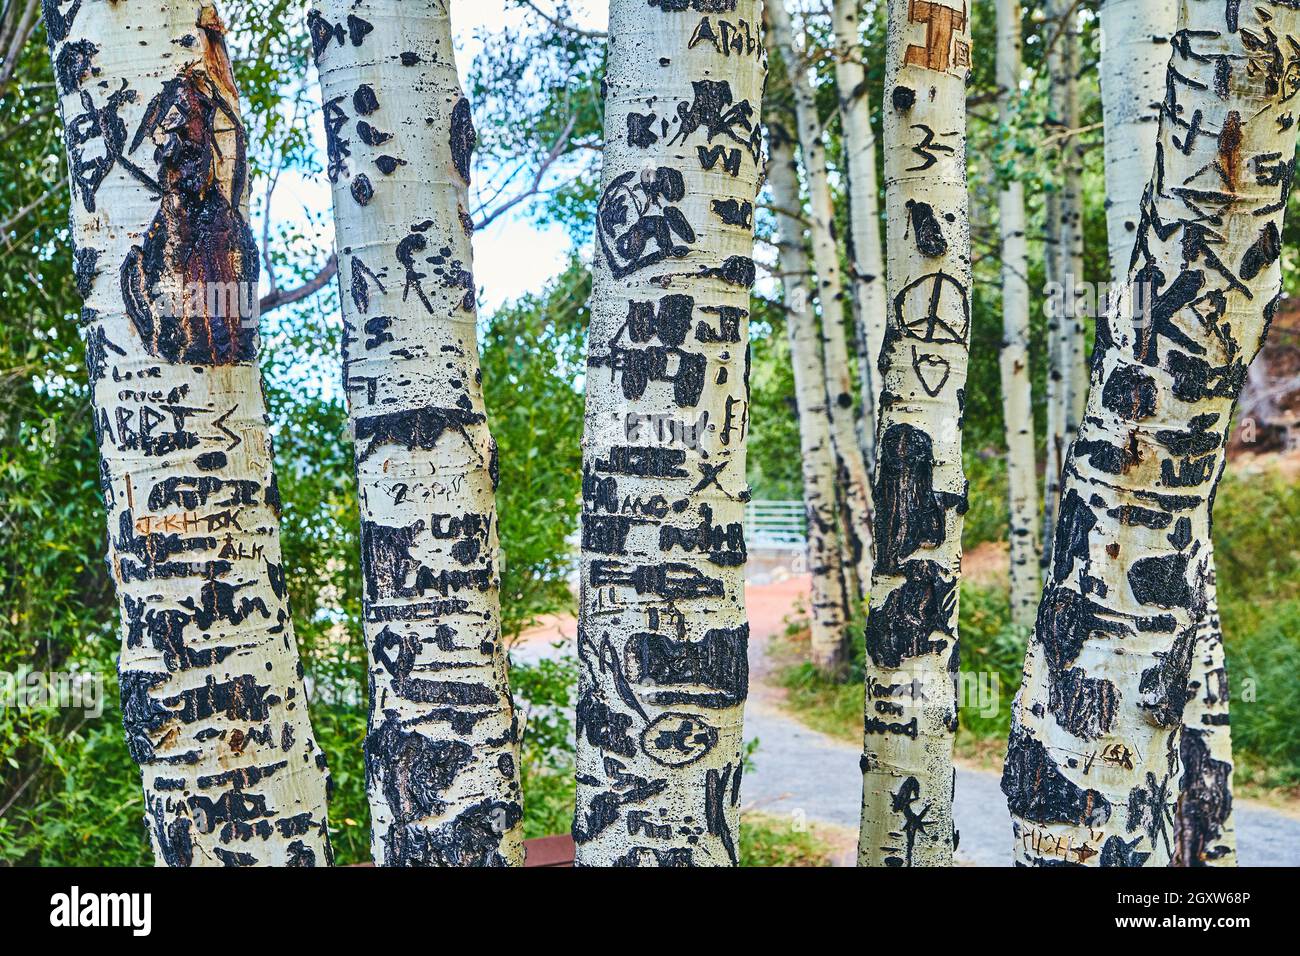 Aspen albero corteccia dettagli in foresta fuori percorso a piedi Foto Stock